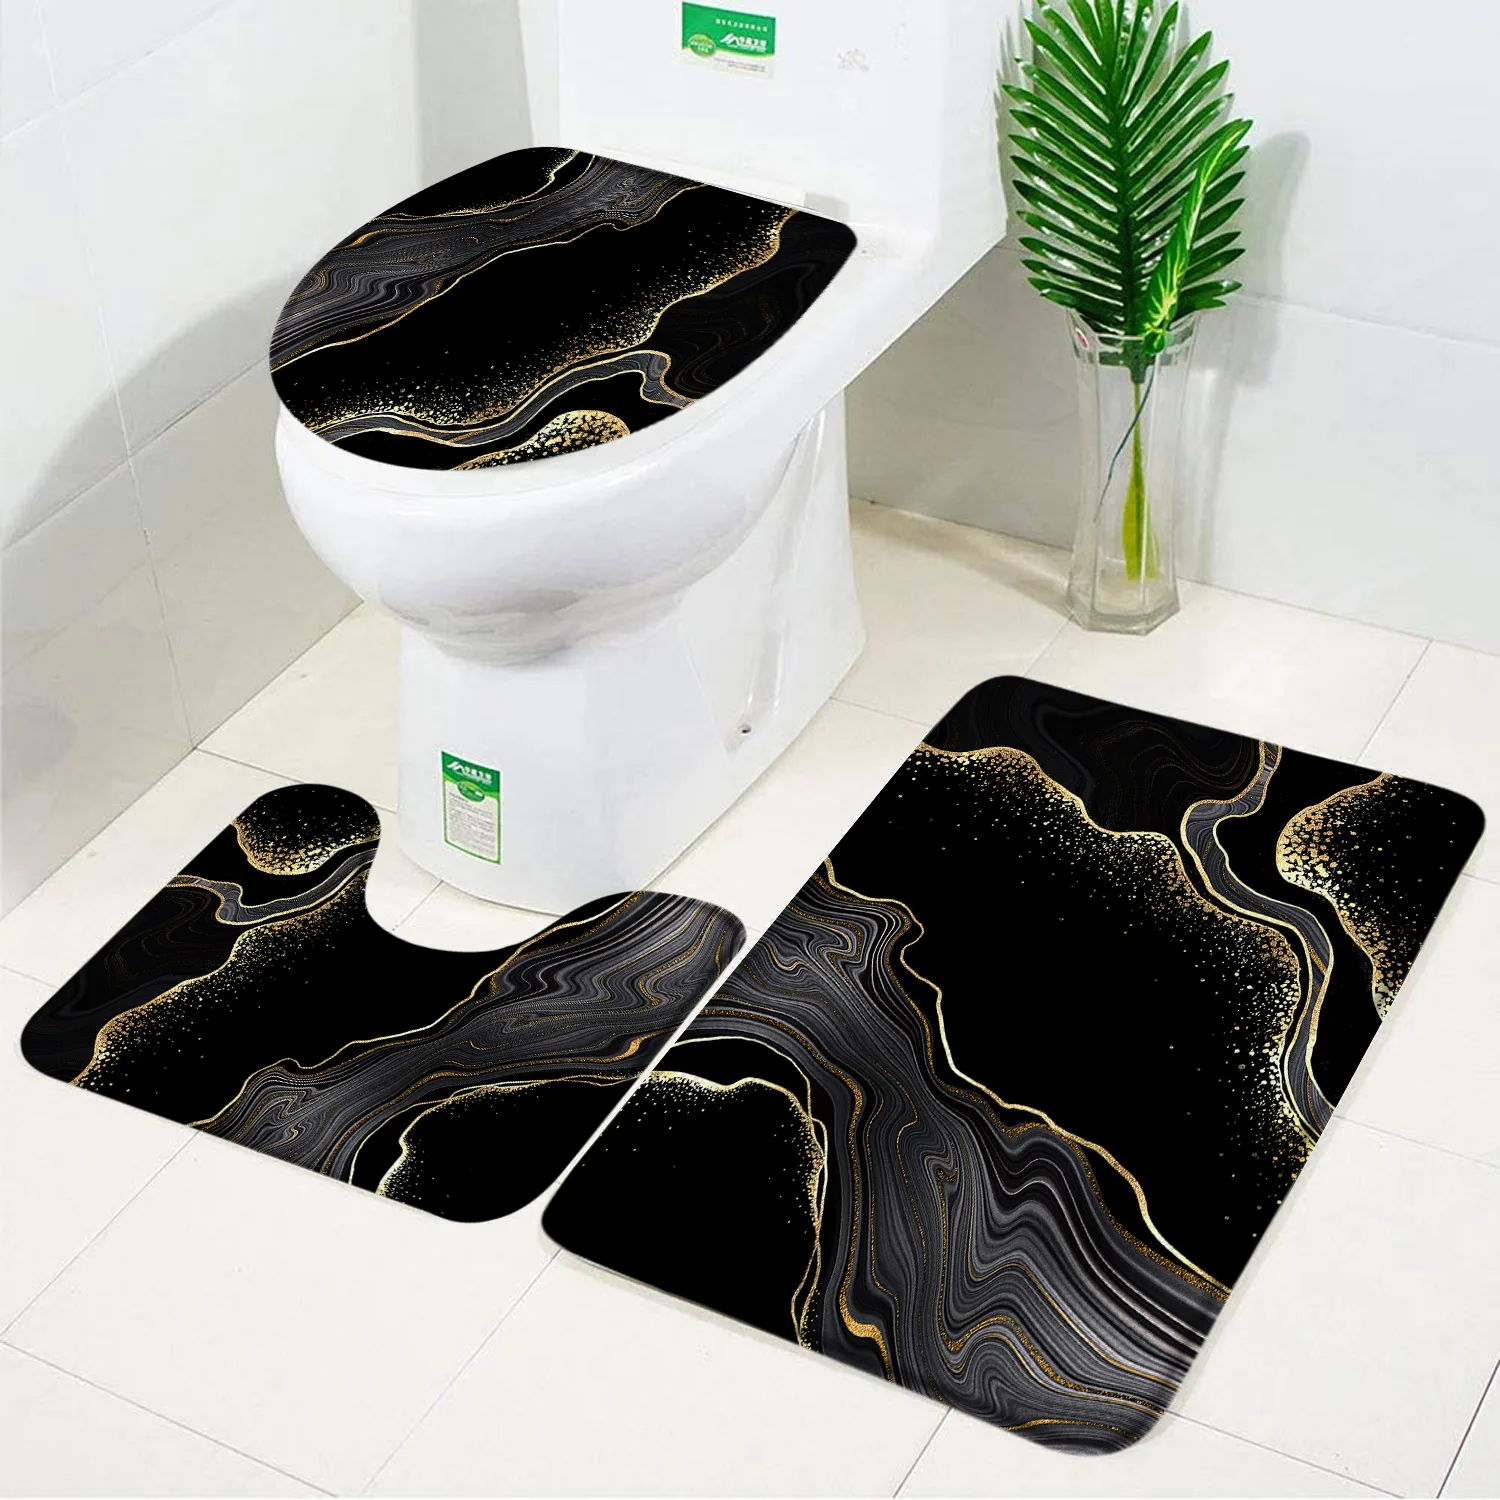 

Черный Мраморный с золотыми трещинами Коврик для ванны современный минималистский декорированный нескользящий пол для ванной комнаты чехол для крышки ванной декоративный набор